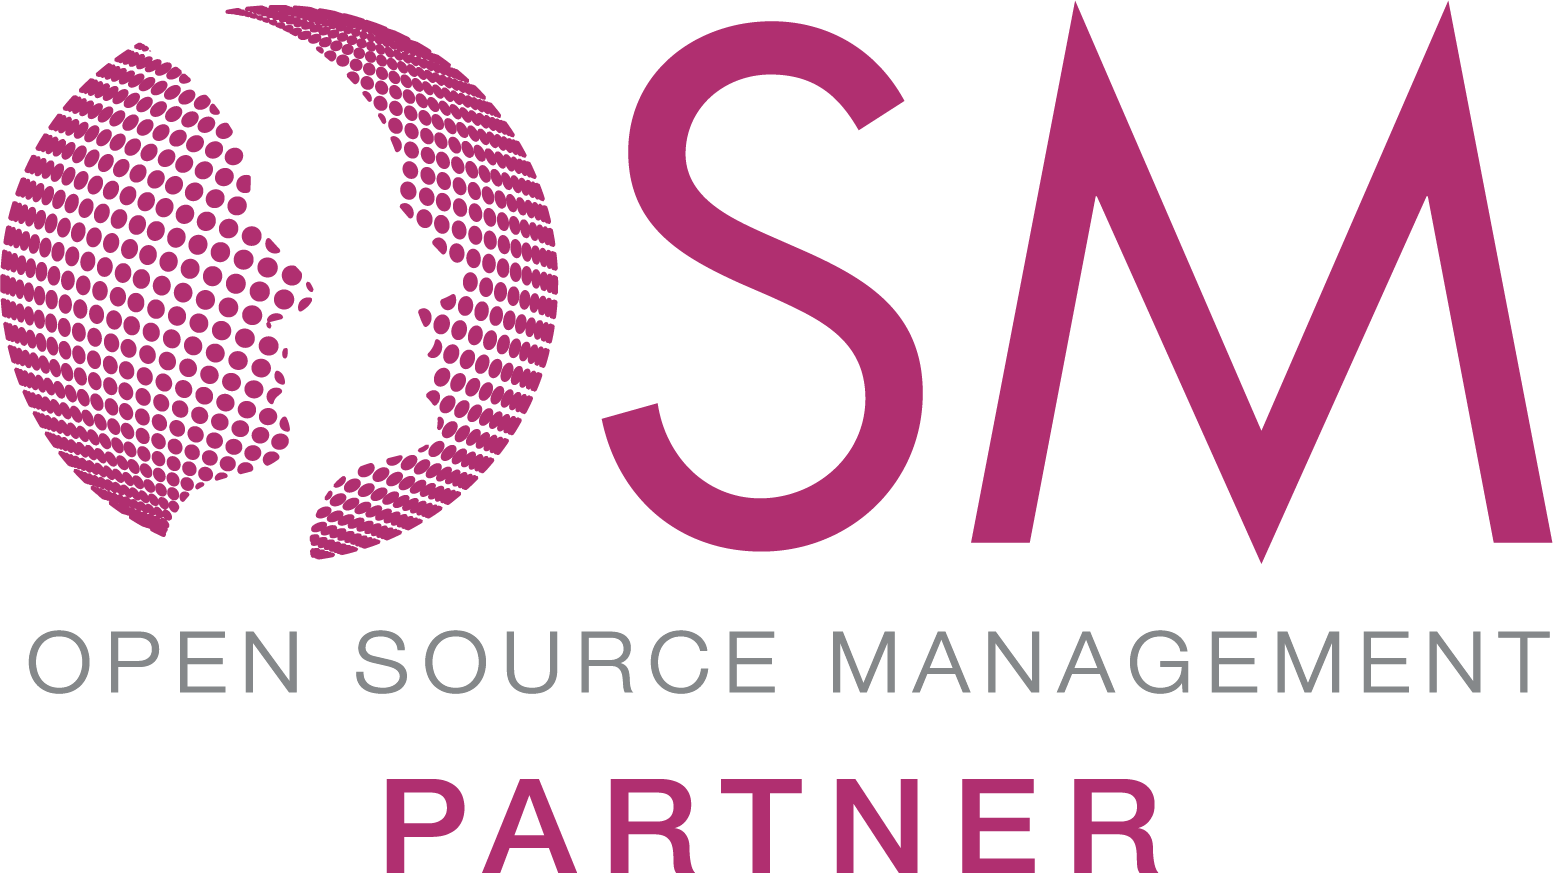 Logo OSM Partner